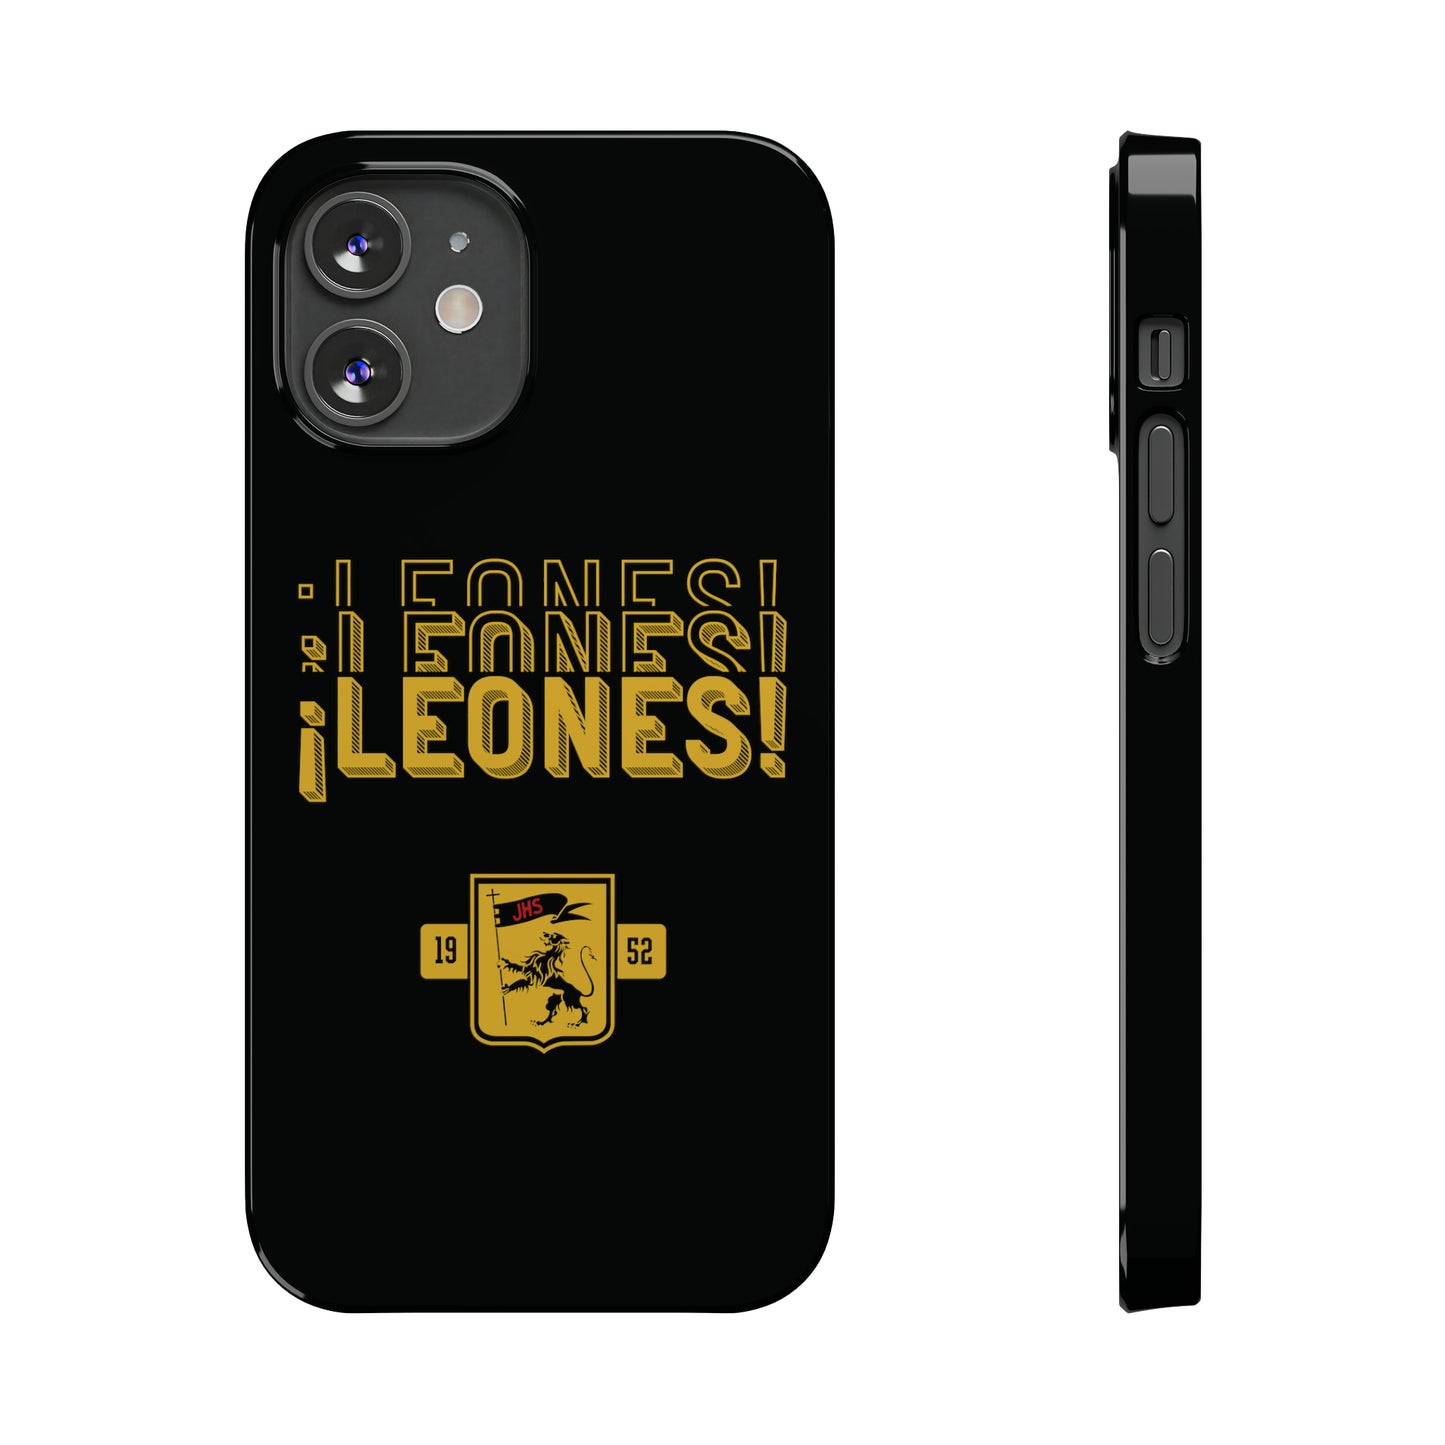 CSI - Leones! Black - Slim iPhone Cases